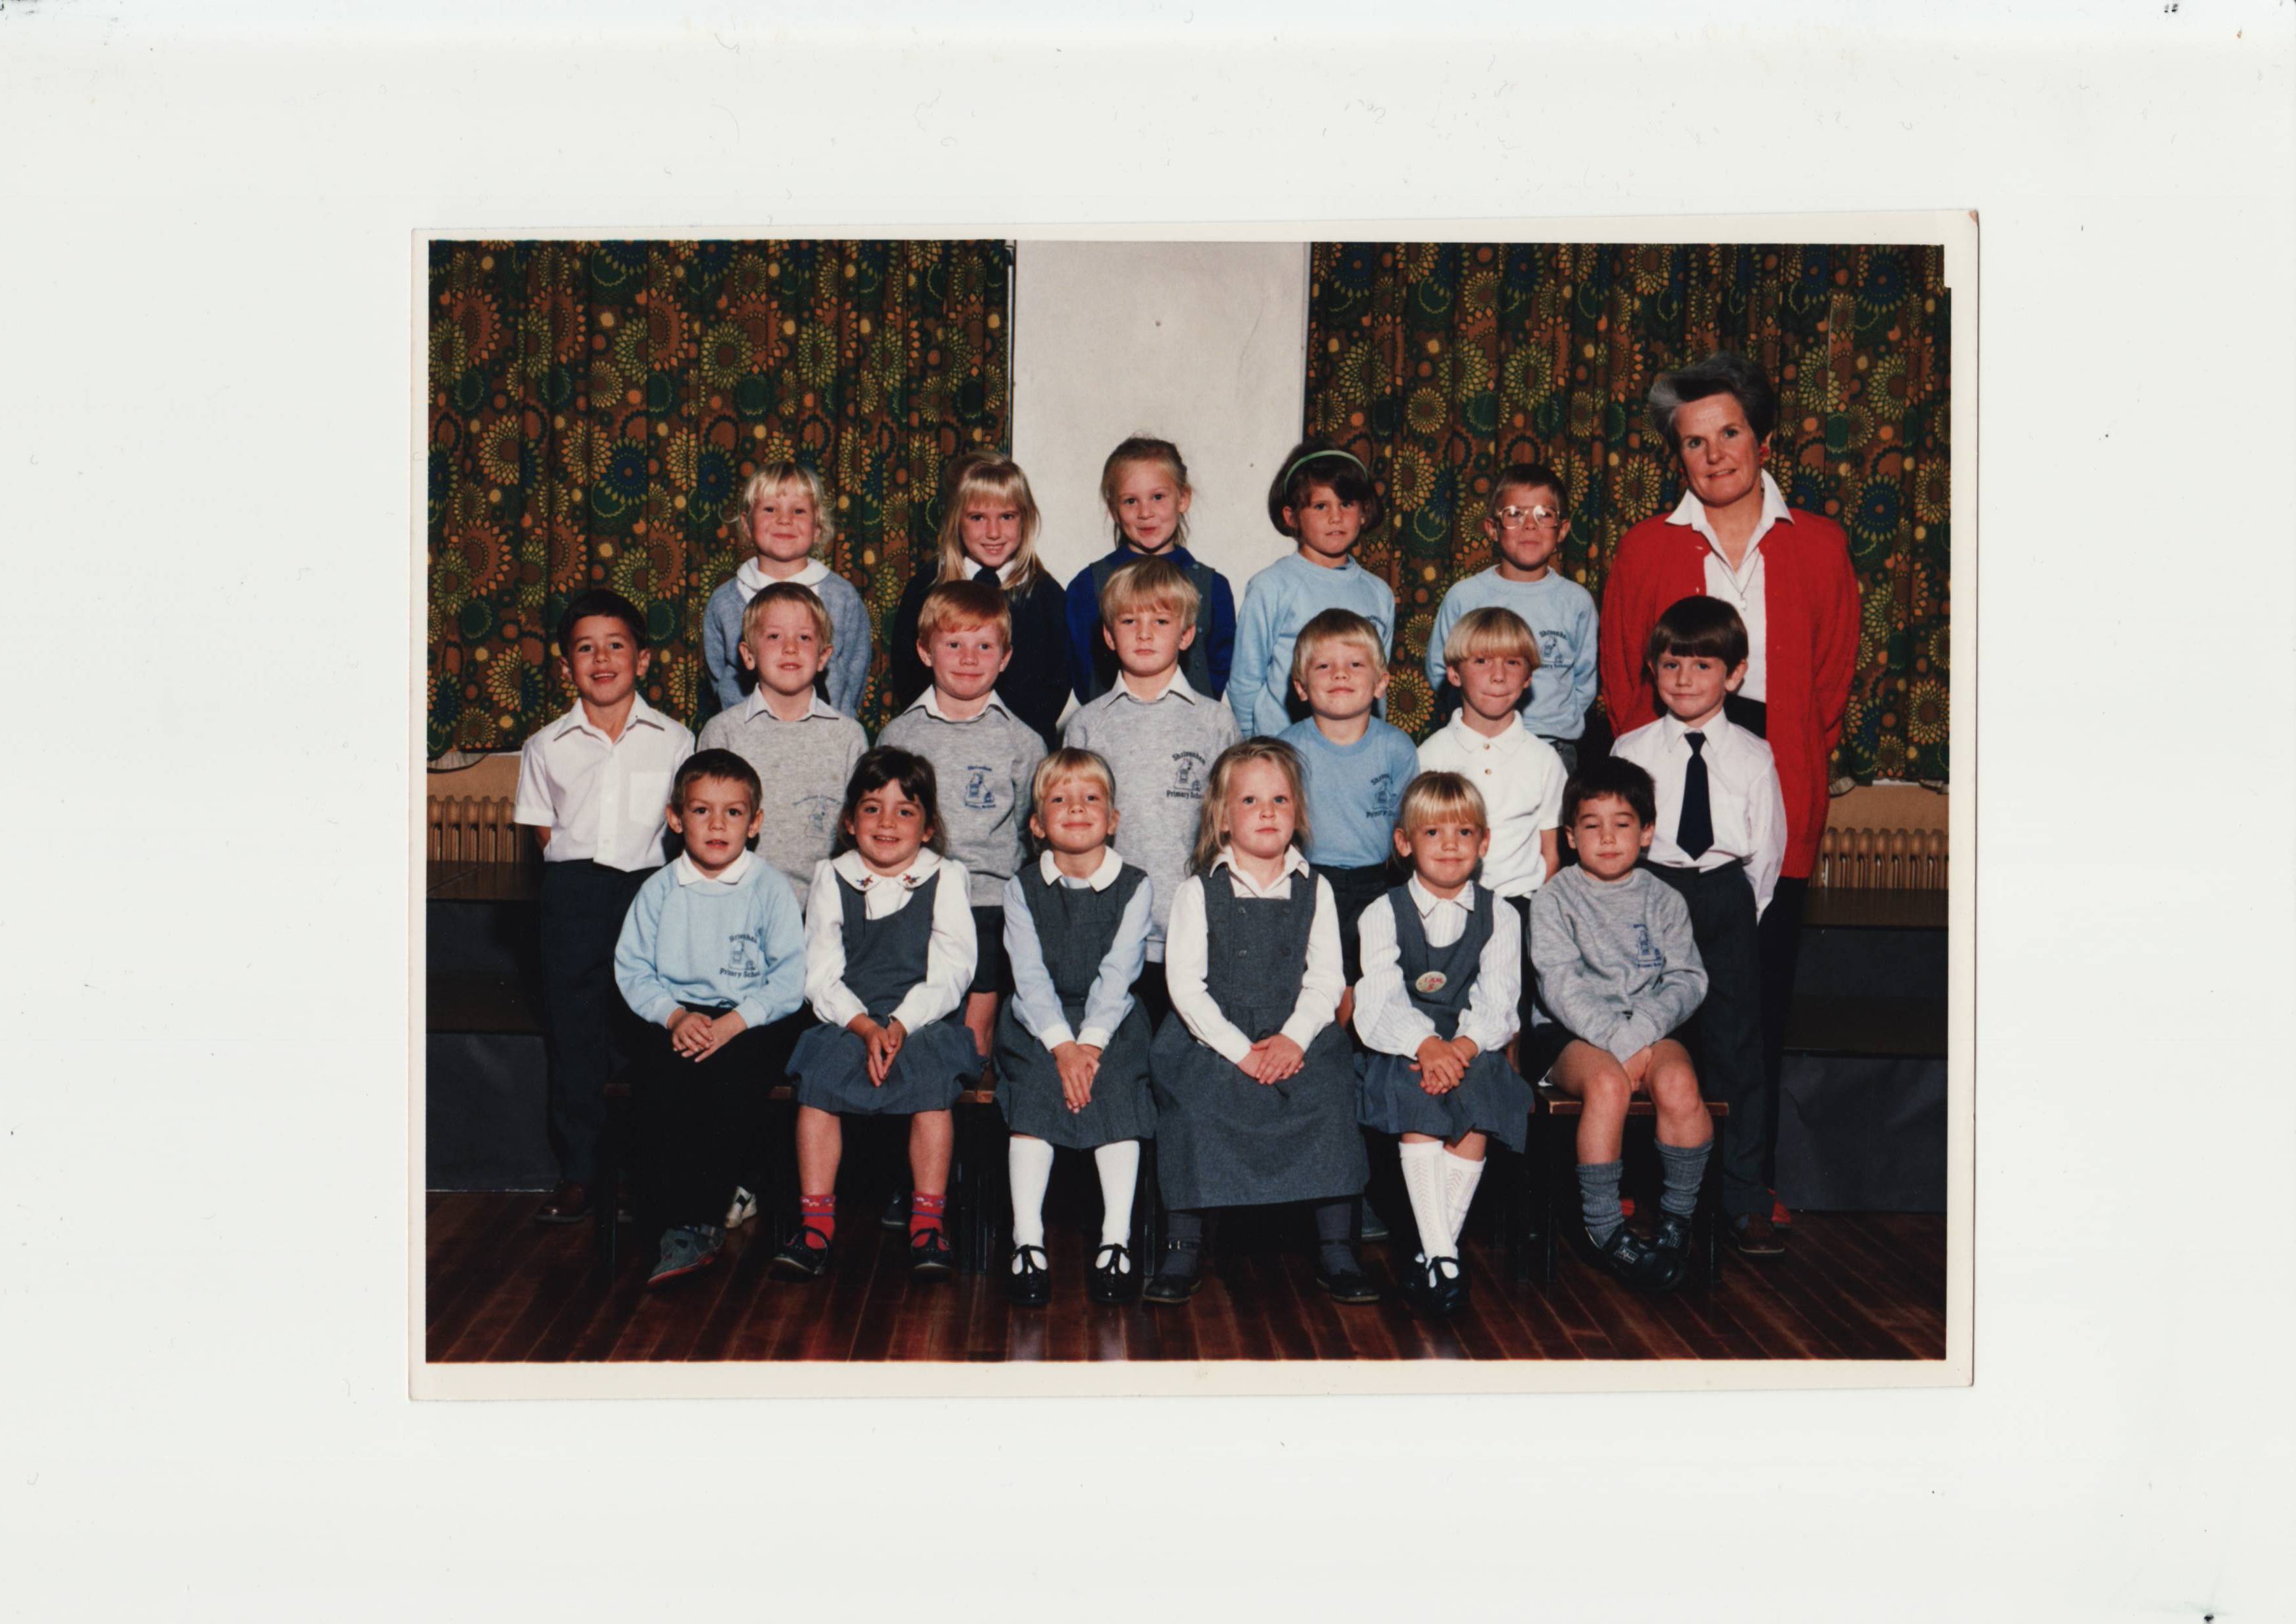 Mrs Critchell Britten's class of 1990